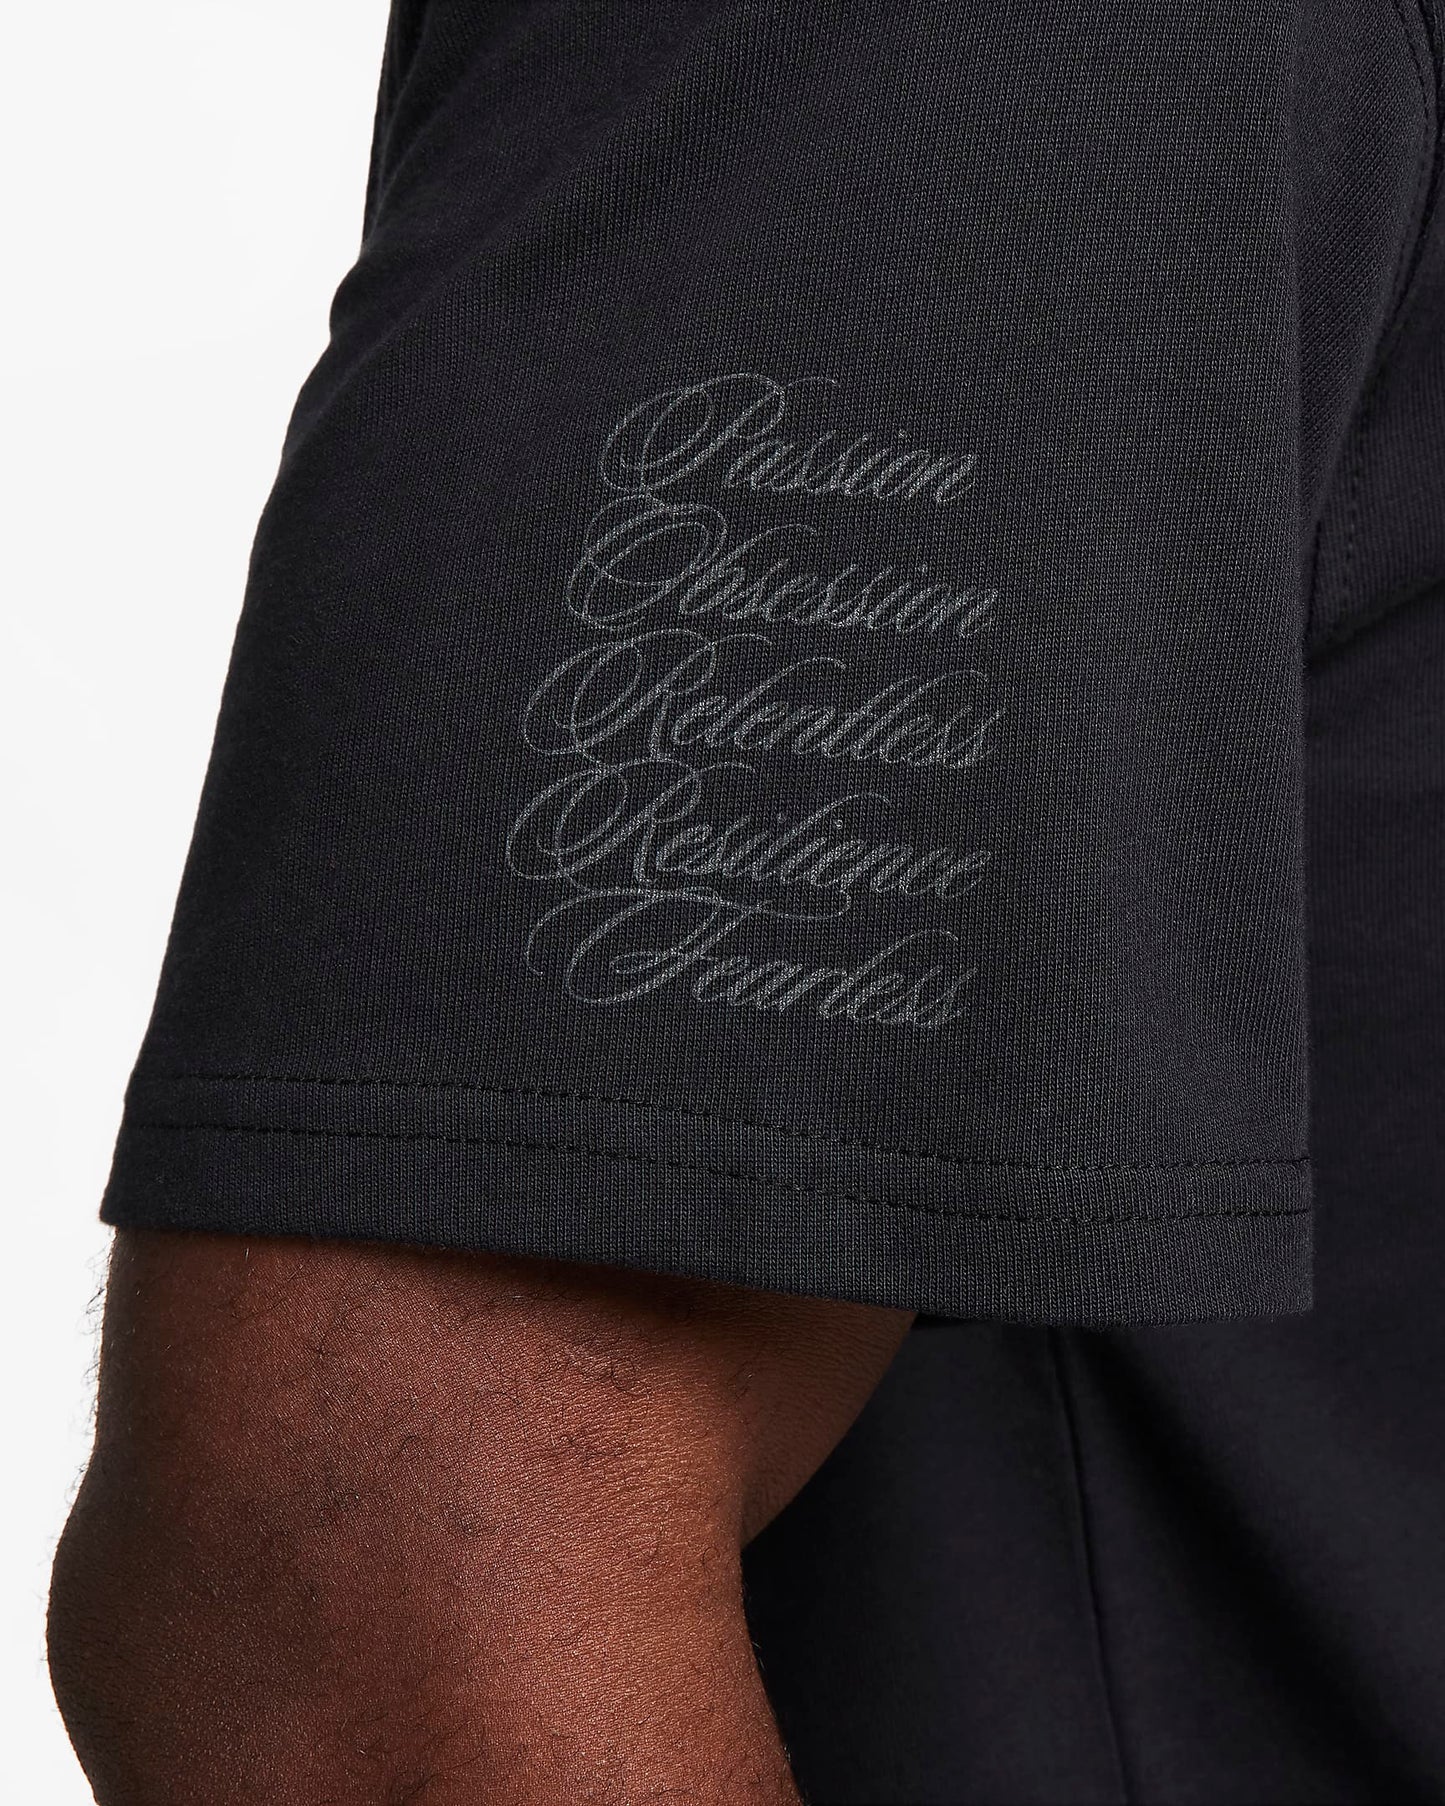 Nike Kobe Mamba Mentality T-Shirt 'Black' - Funky Insole